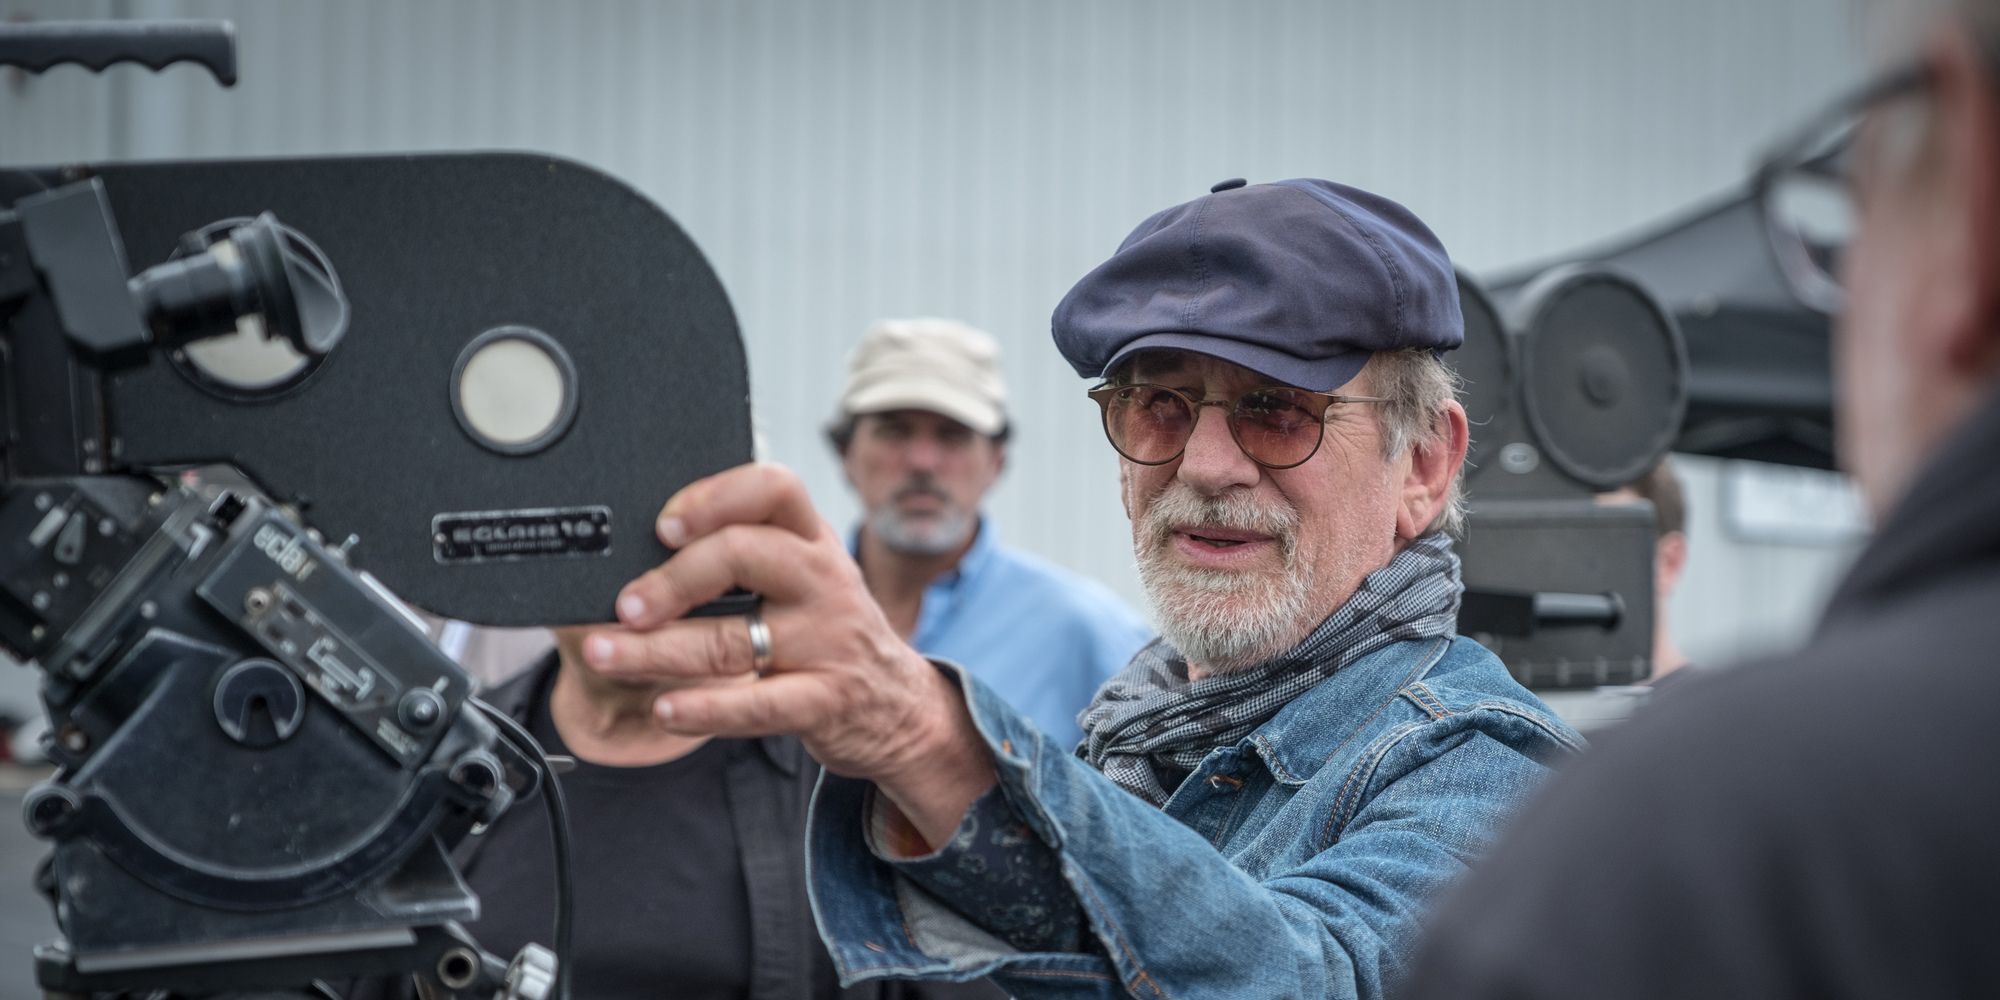 Steven Spielberg directing